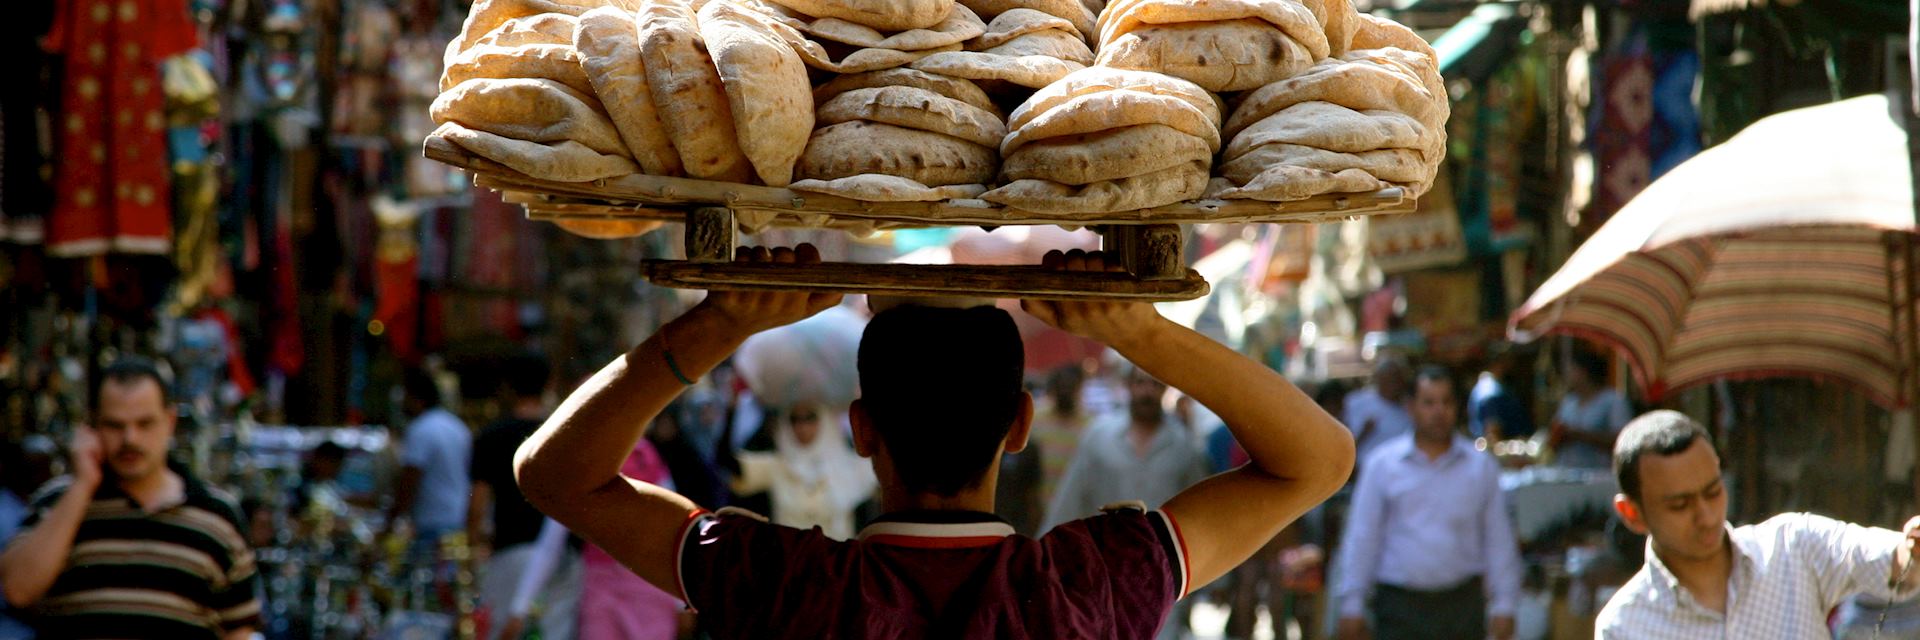 Bread maker, Khan el-Khalili